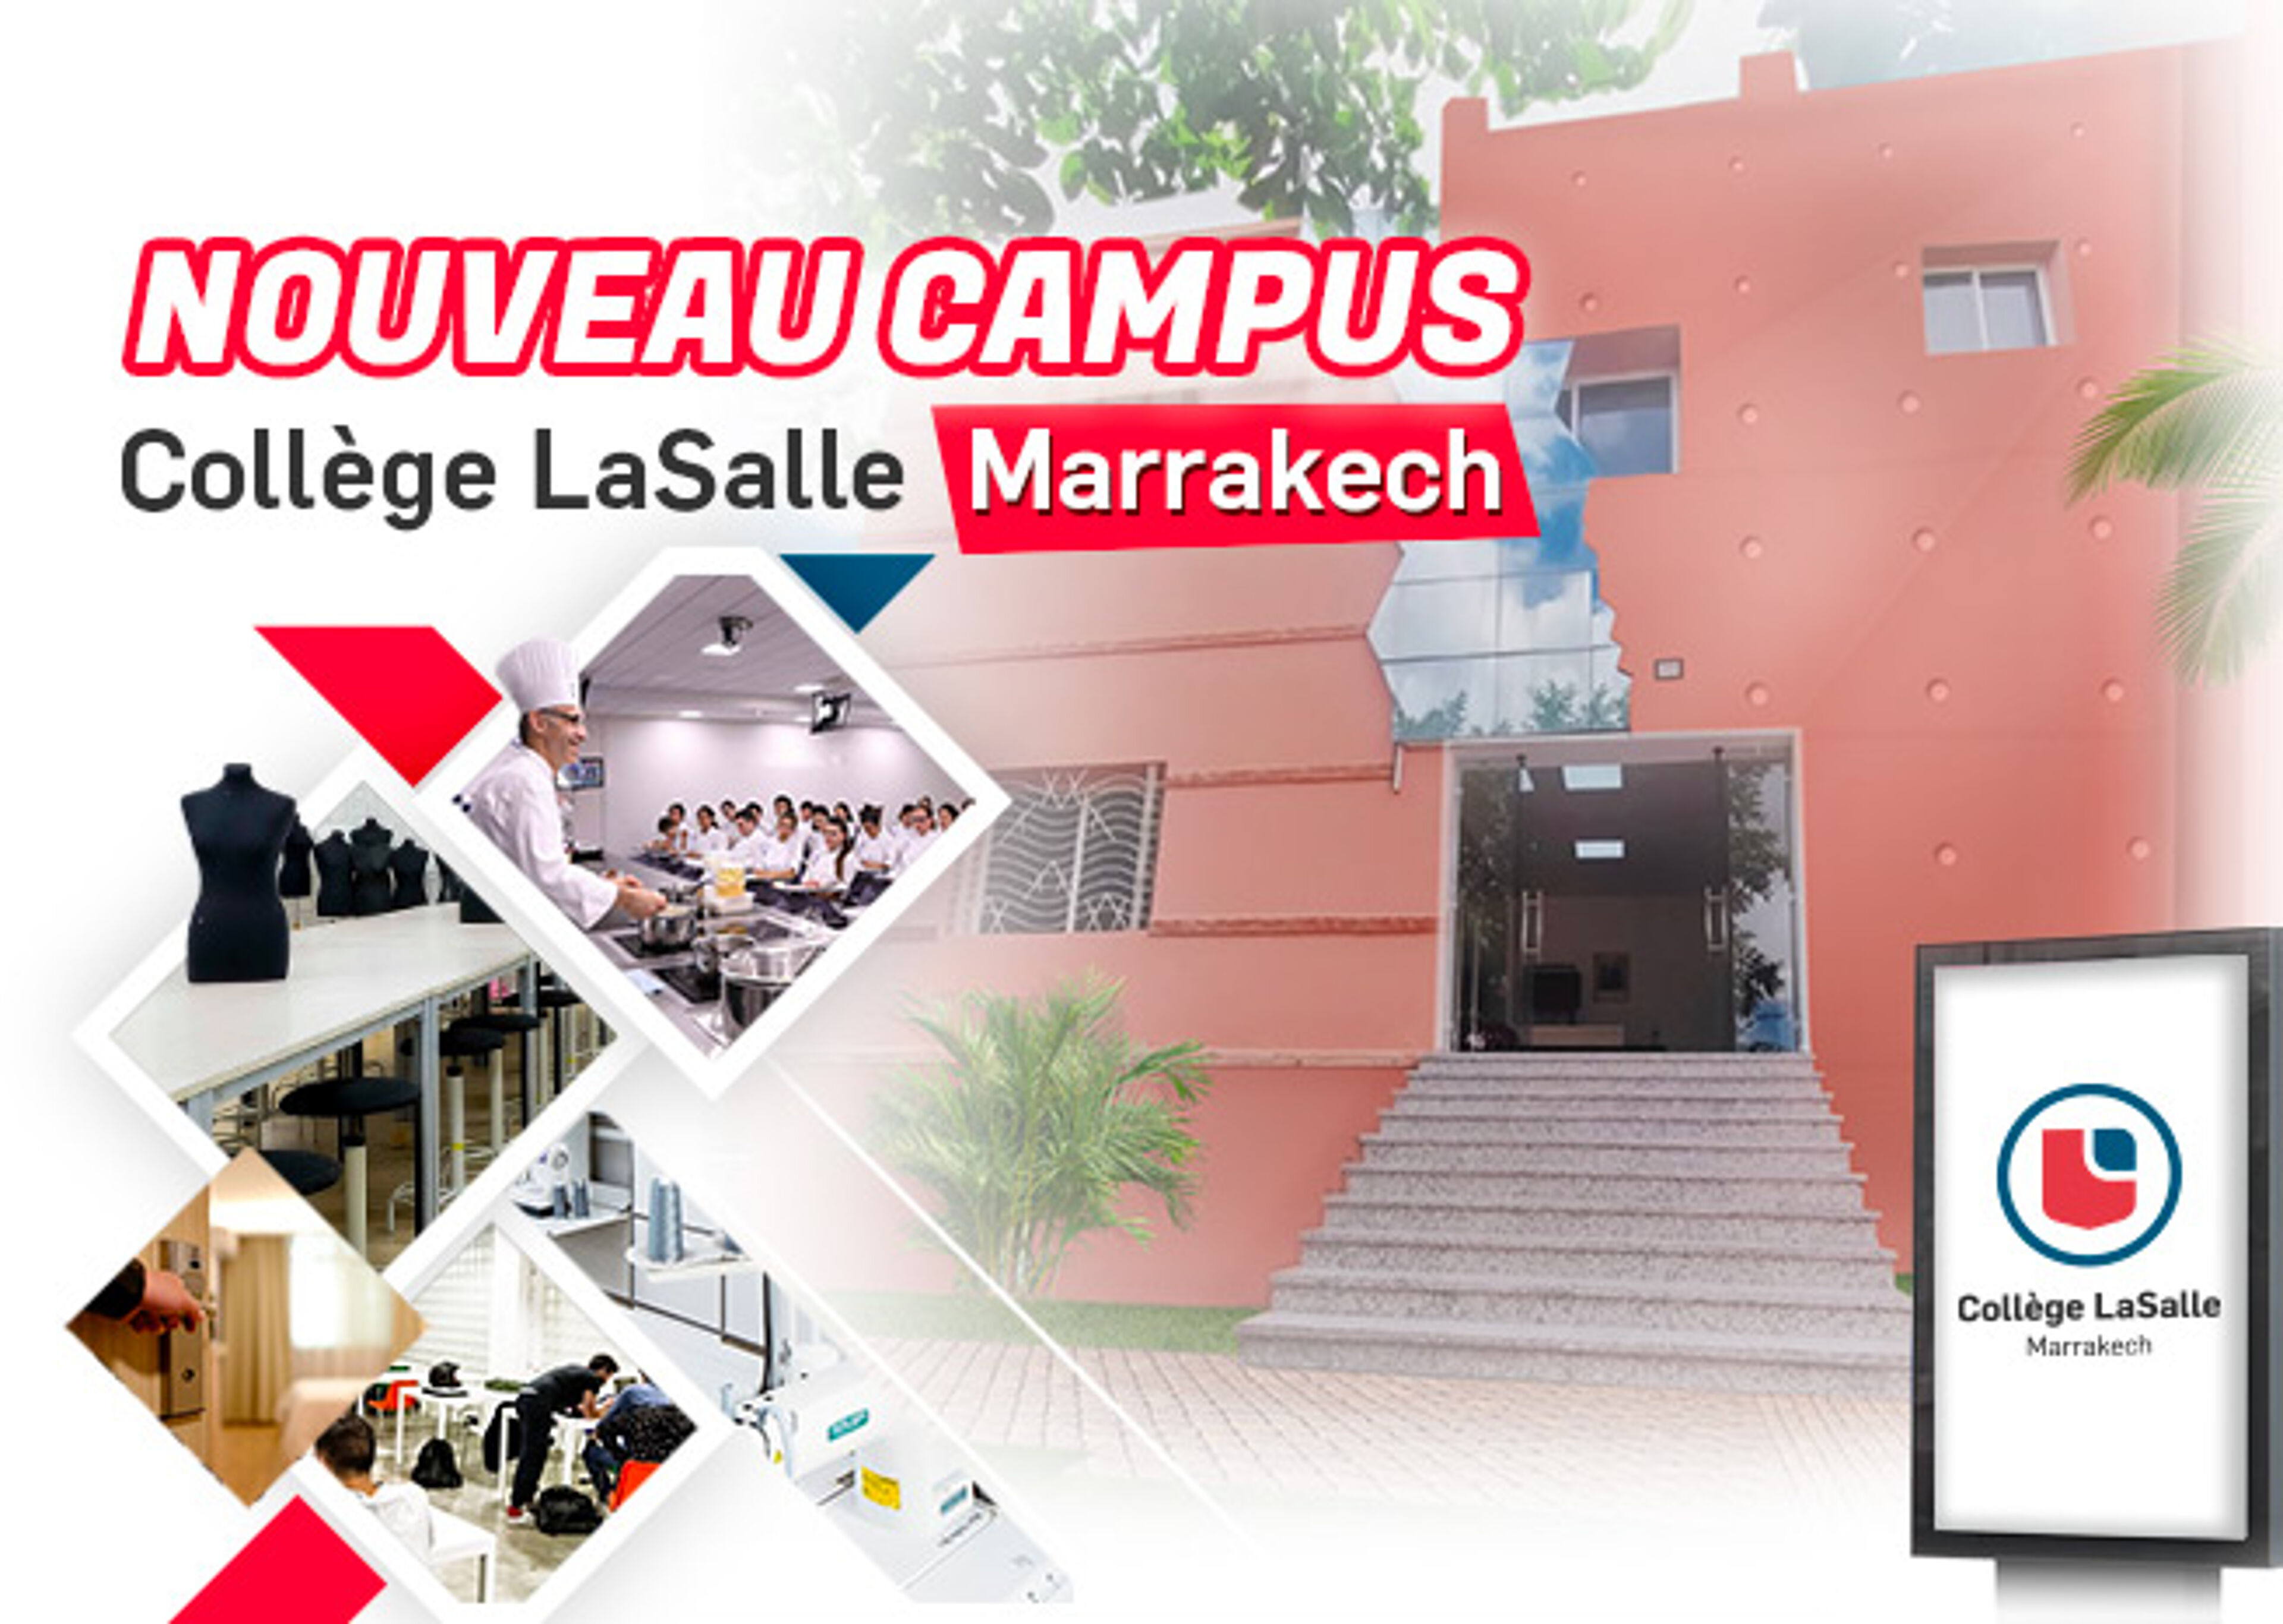 Un collage promotionnel du nouveau campus du Collège LaSalle à Marrakech, montrant la façade rose, des salles de classe et des ateliers de design.